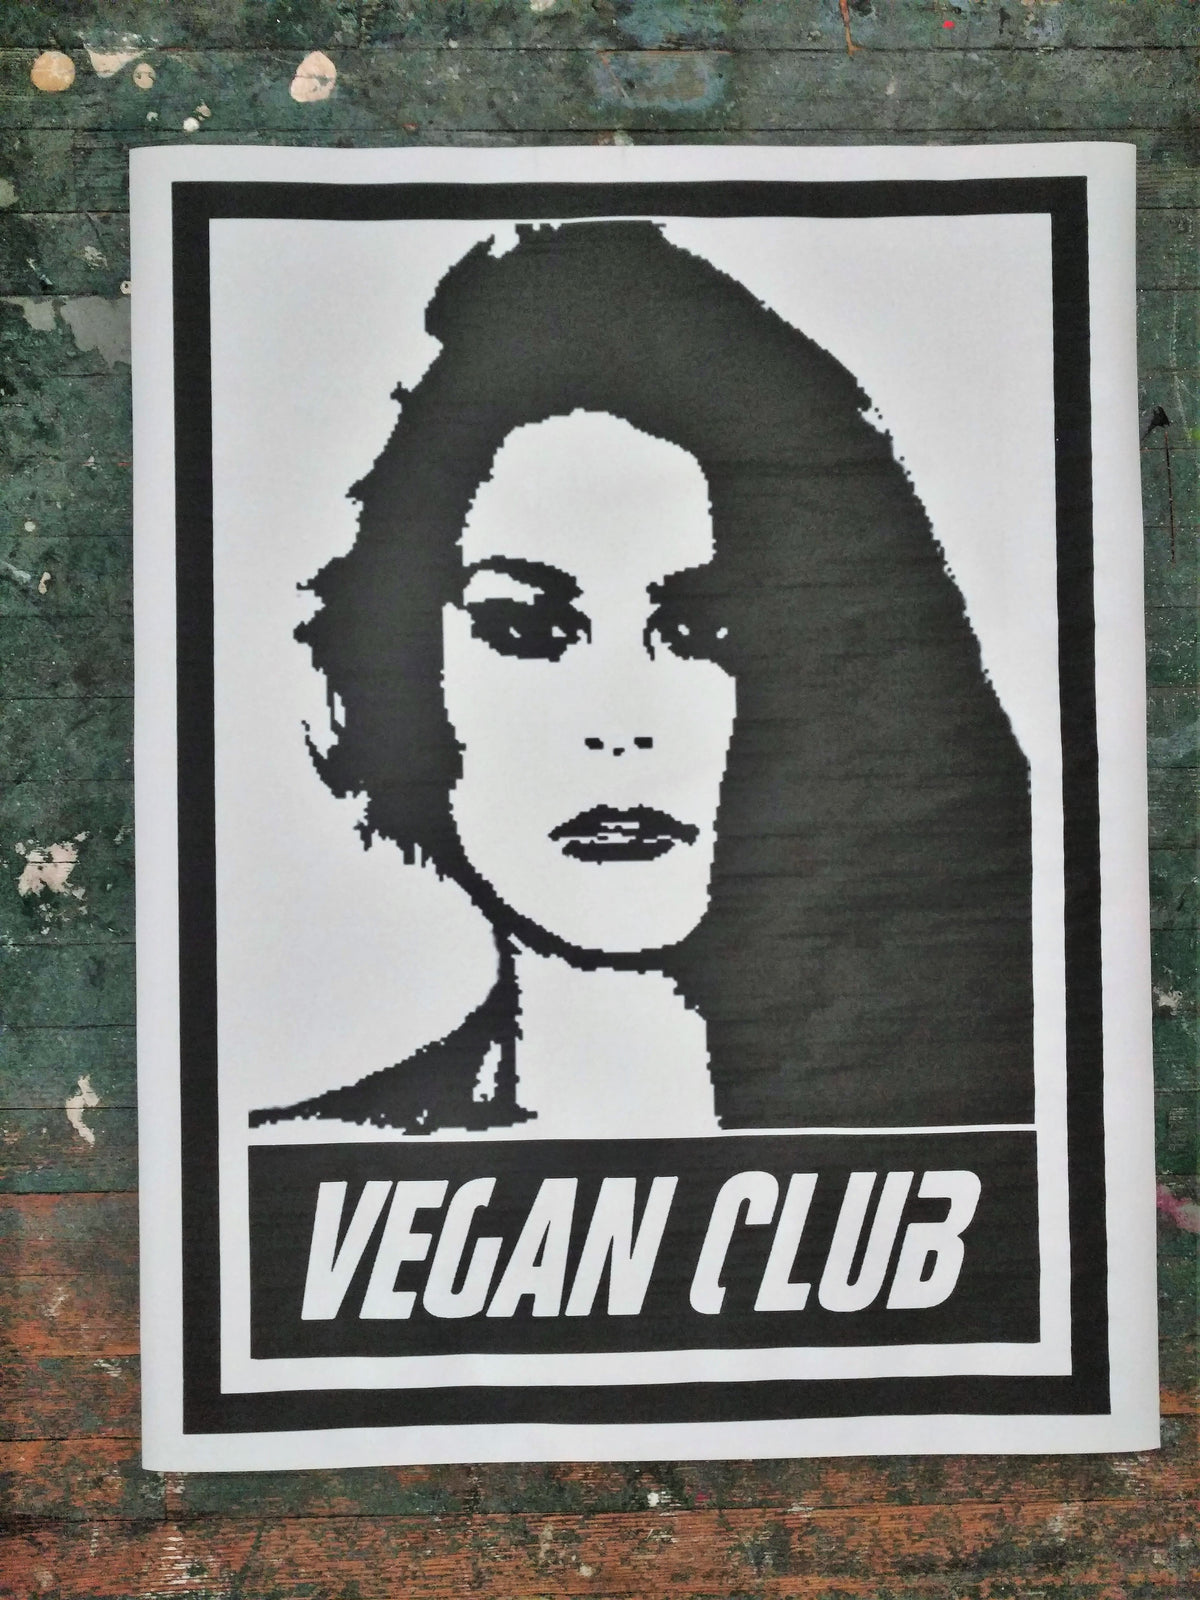 Limited Street Art NewsPrint Poster Vegan Club Warriors feat Amy Davis Signed L3f0u